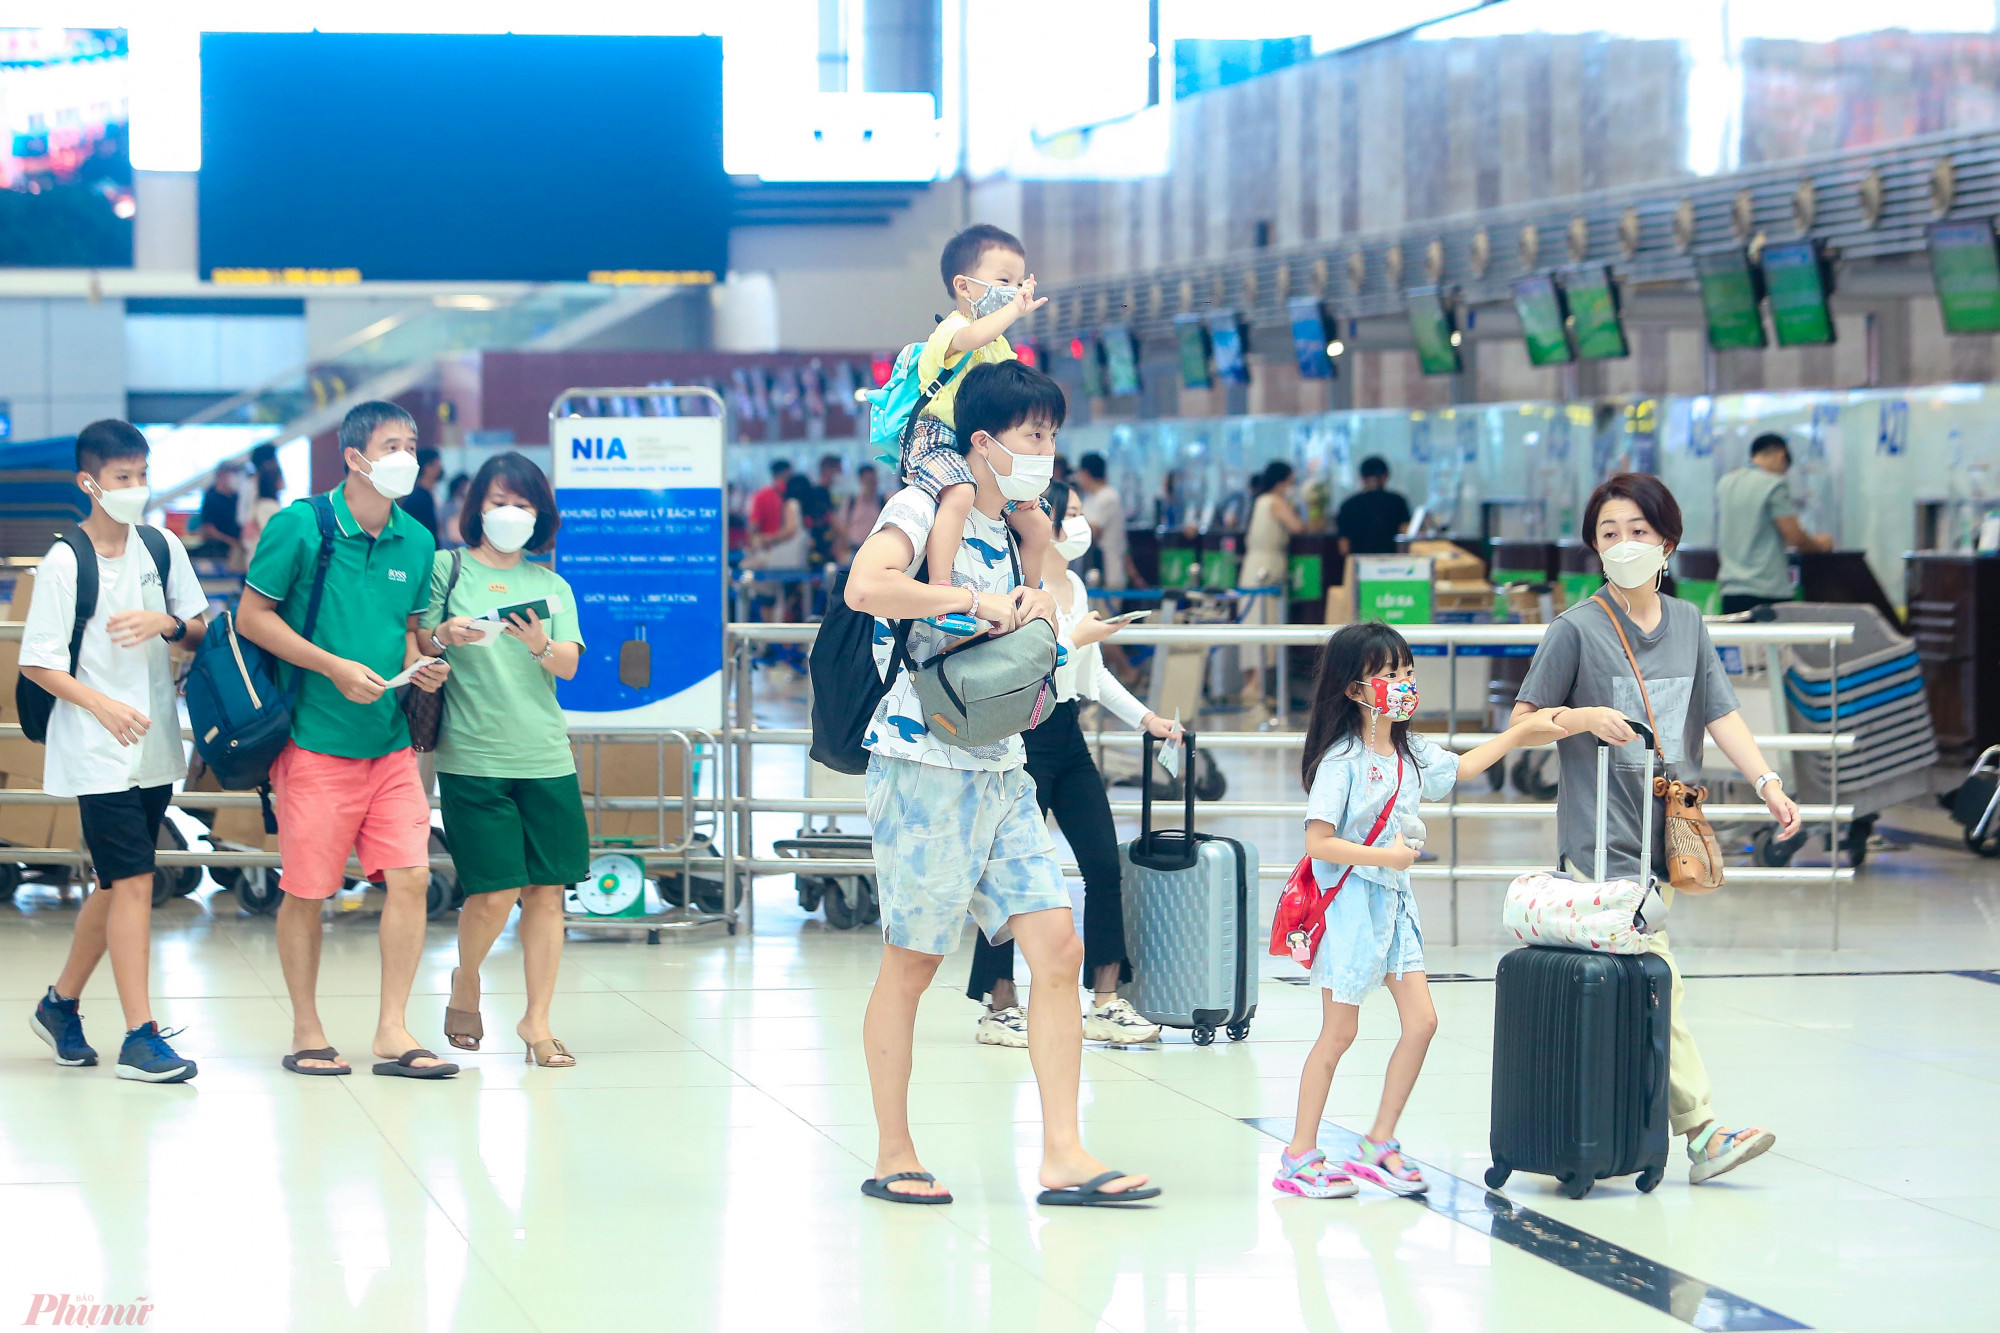 Theo nhân viên an ninh tại sân bay Nội Bài, lượng khách đến sân bay trong ngày 1/9 tương đối đông, tuy nhiên bắt đầu từ trưa lượng khách sẽ đổ về đây ngày một nhiều hơn.